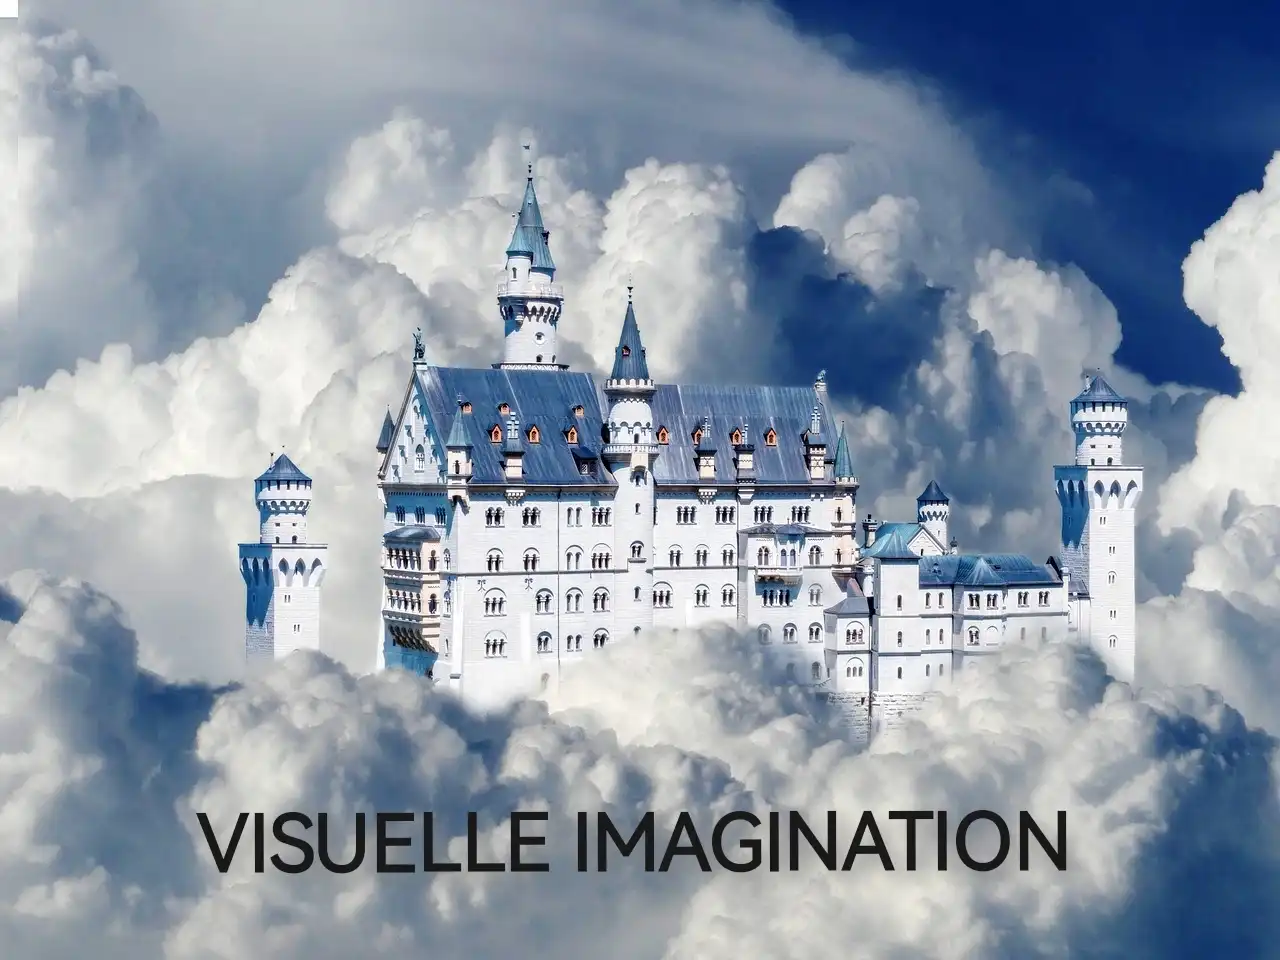 visulle imagination positive vorstellungskraft mentaltraining wien mentaltrainer träume leben besser werden luftschloss luftschlösser bauen